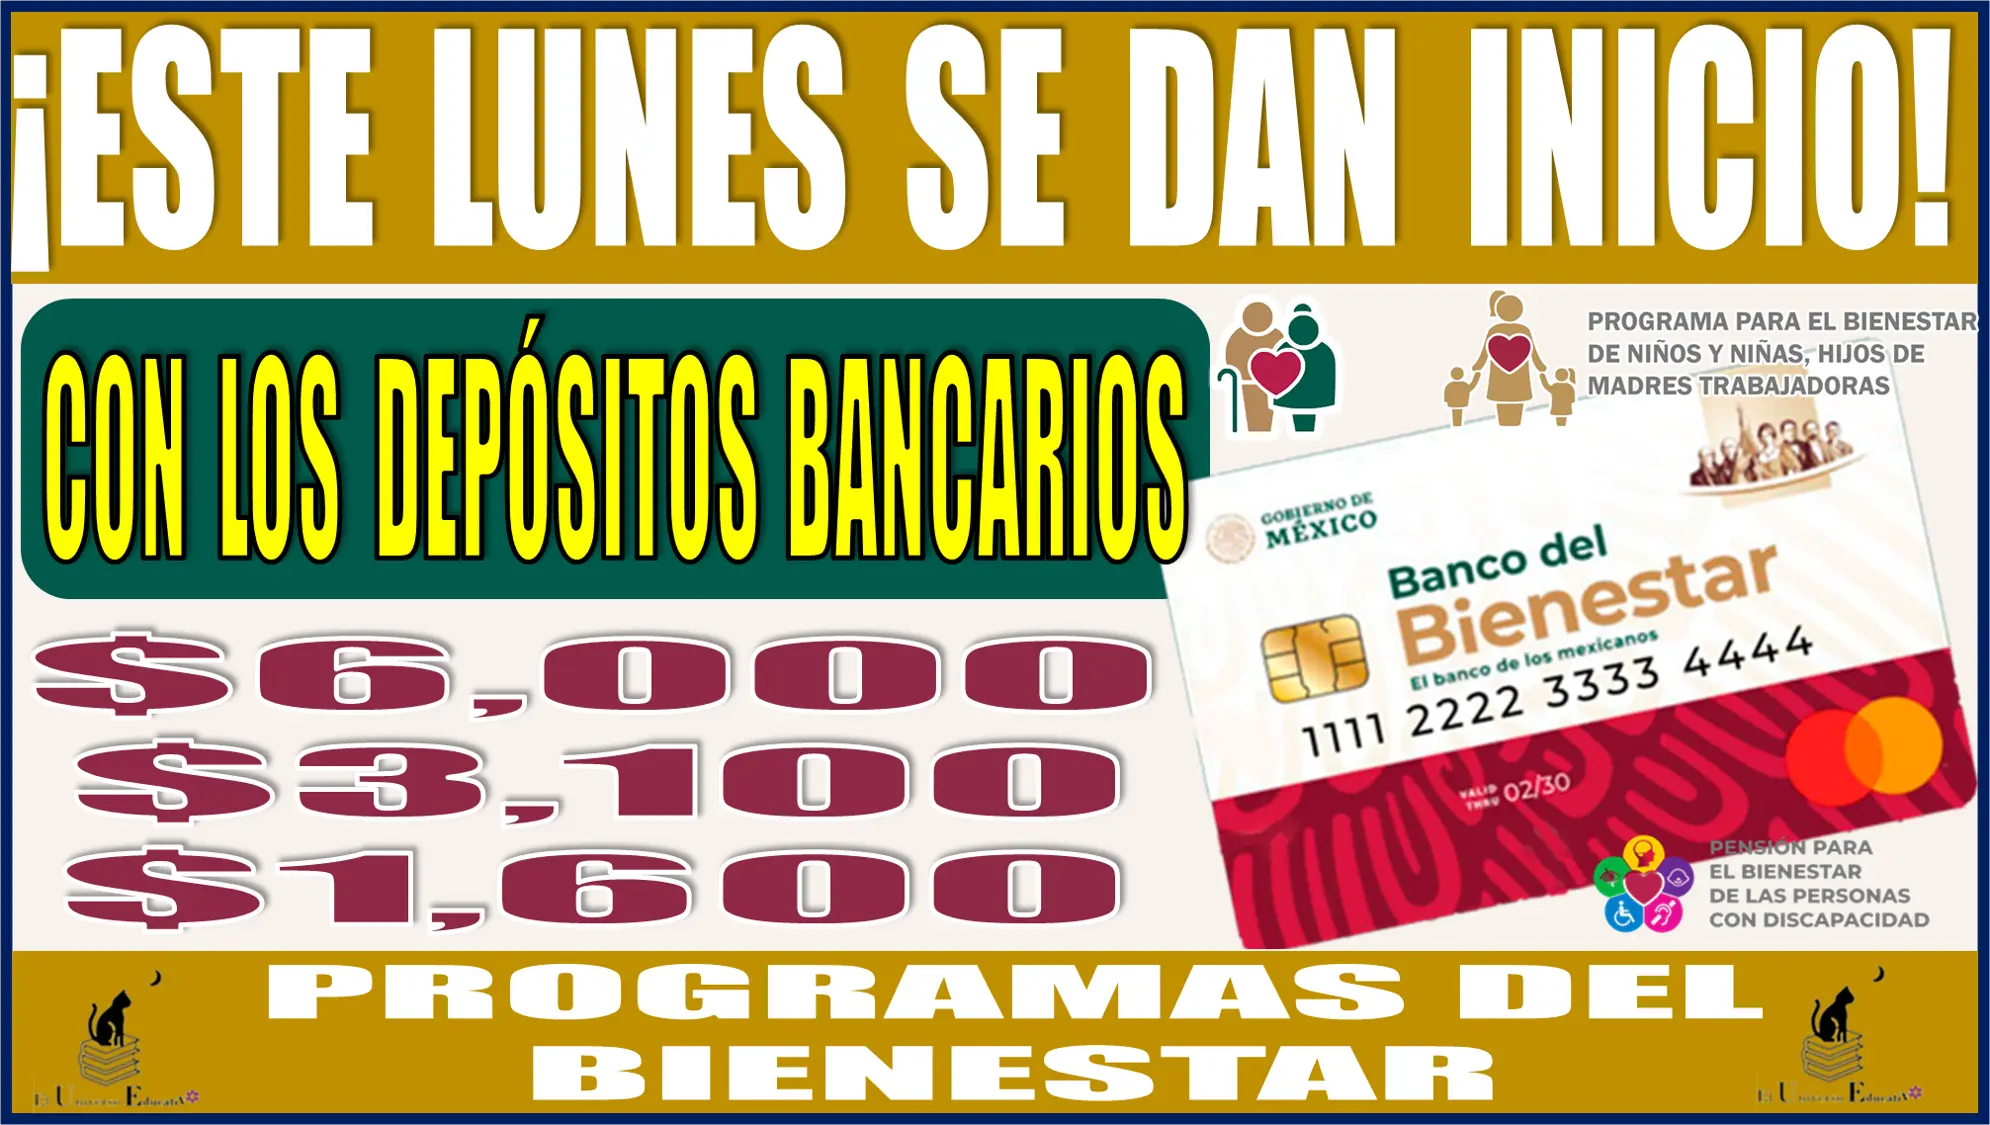 ¡Este lunes se dan inicio con los depósitos bancarios de: $6,000, $3,100 y $1,600 pesos | Programas del Bienestar! 